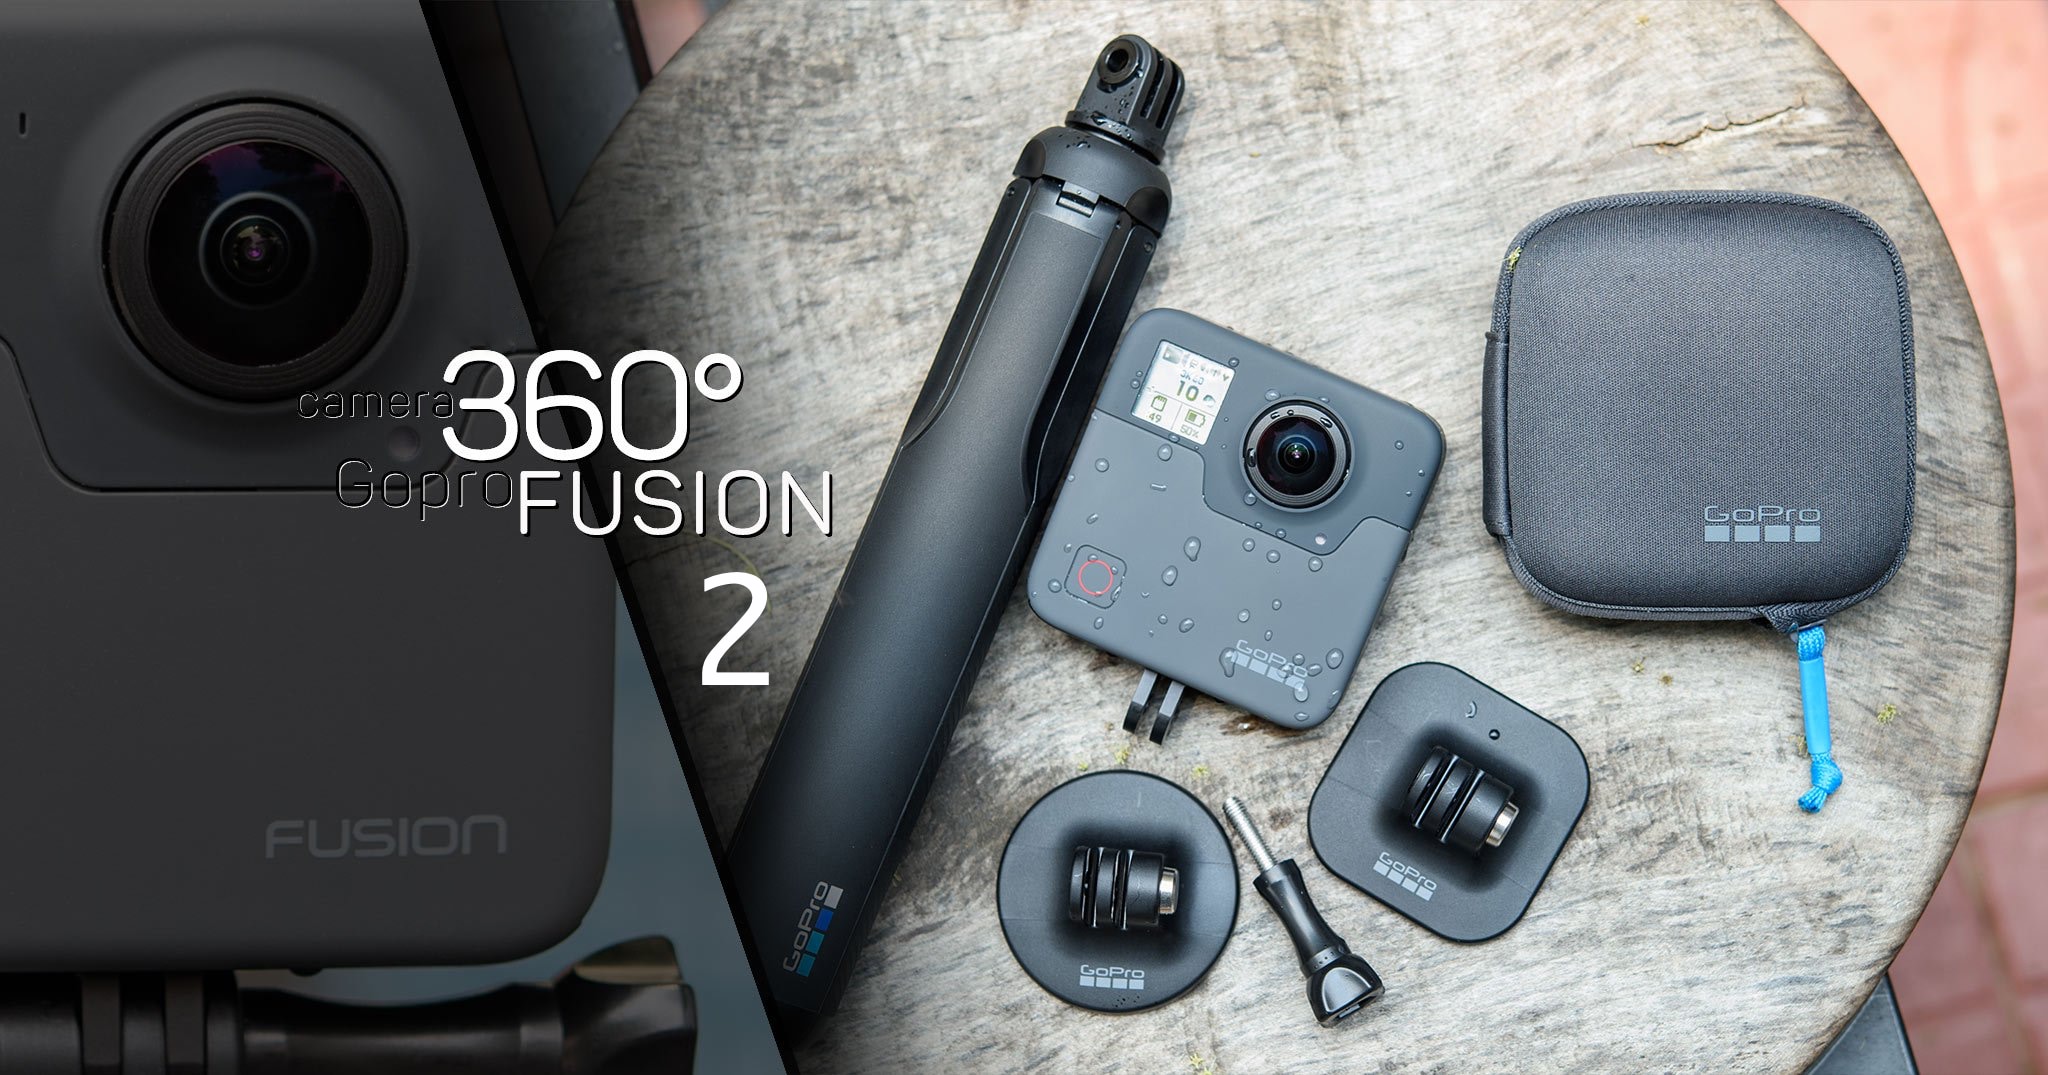 GoPro giảm giá 50% Fusion trên trang chủ, xác nhận sẽ ra mắt thế hệ thứ 2 trong năm nay